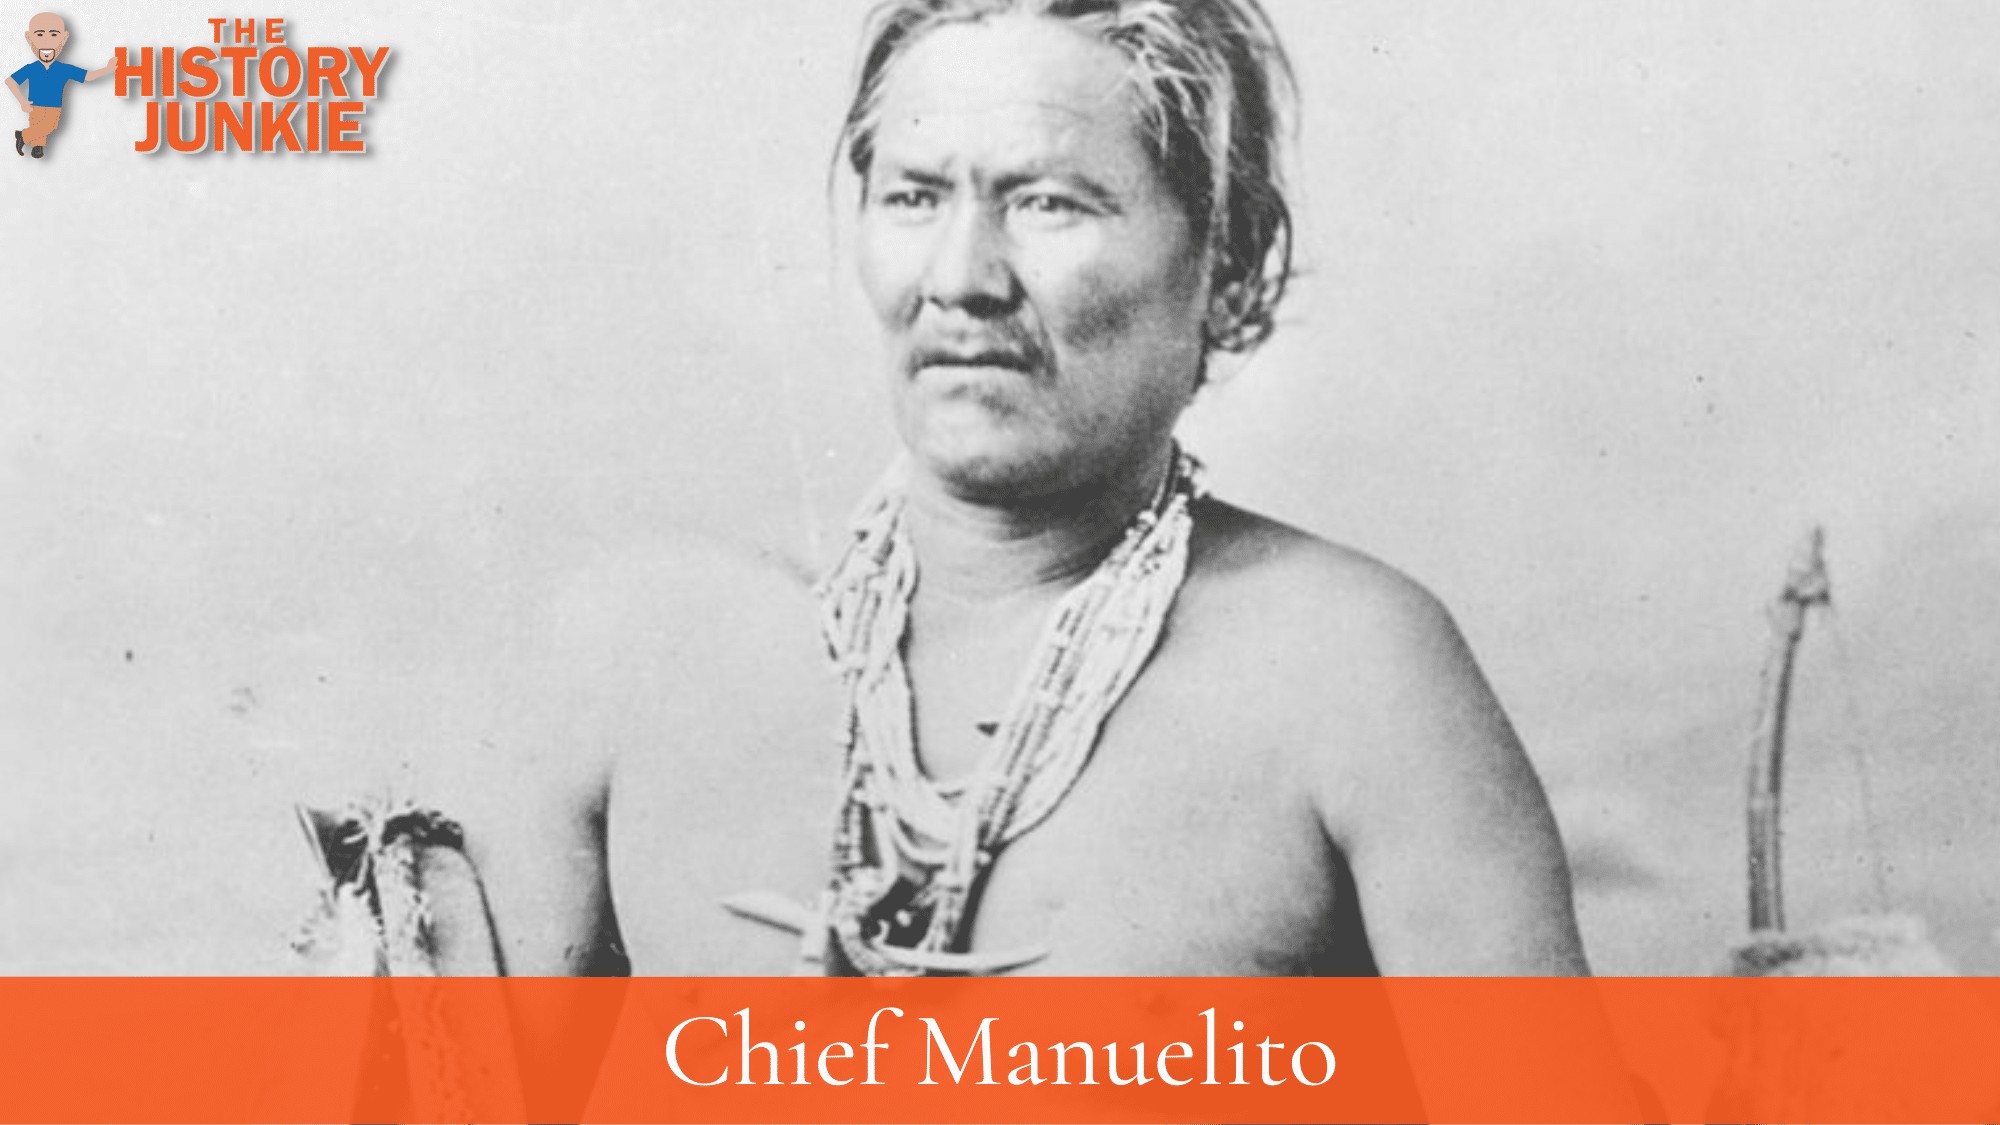 Chief Manuelito